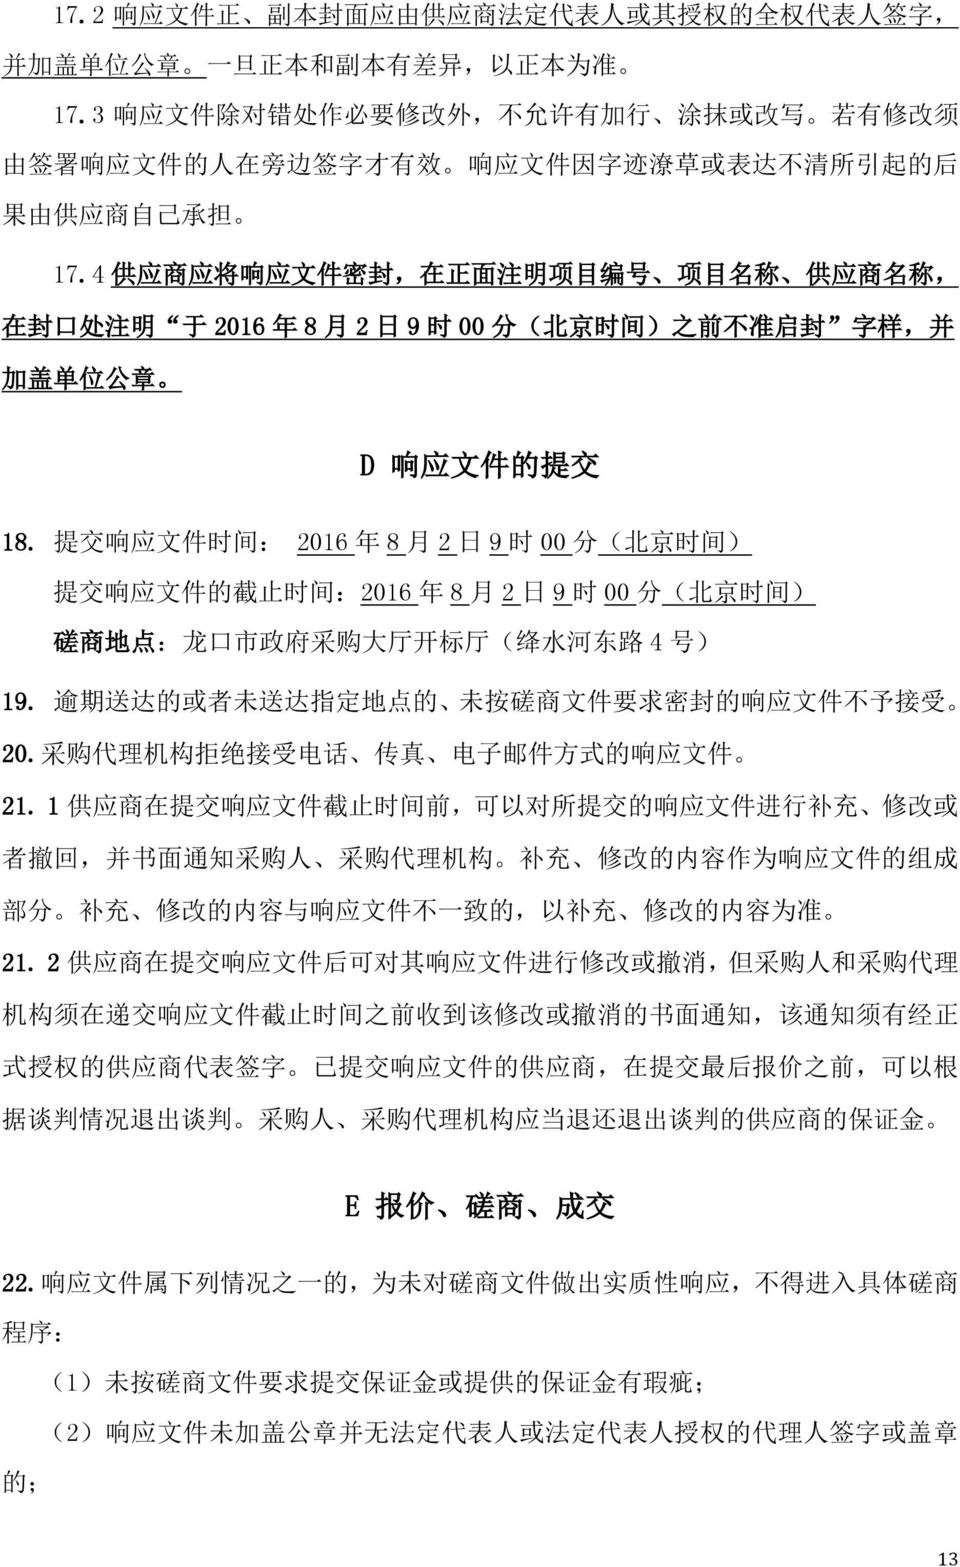 4 供 应 商 应 将 响 应 文 件 密 封, 在 正 面 注 明 项 目 编 号 项 目 名 称 供 应 商 名 称, 在 封 口 处 注 明 于 2016 年 8 月 2 日 9 时 00 分 ( 北 京 时 间 ) 之 前 不 准 启 封 字 样, 并 加 盖 单 位 公 章 D 响 应 文 件 的 提 交 18.